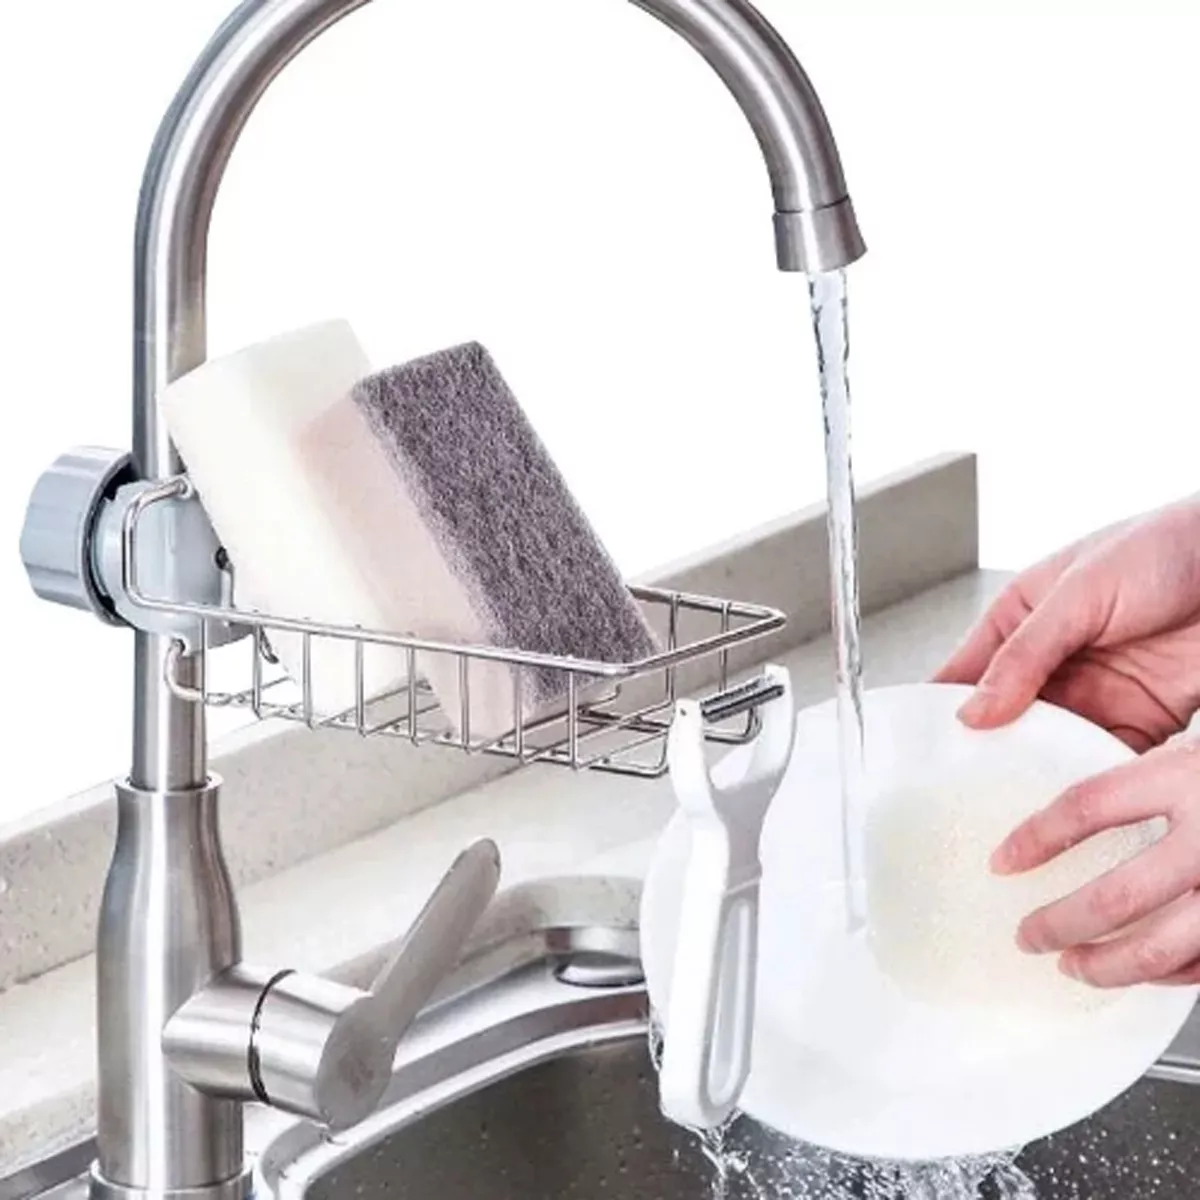 Primera imagen para búsqueda de soporte esponja lavaplatos